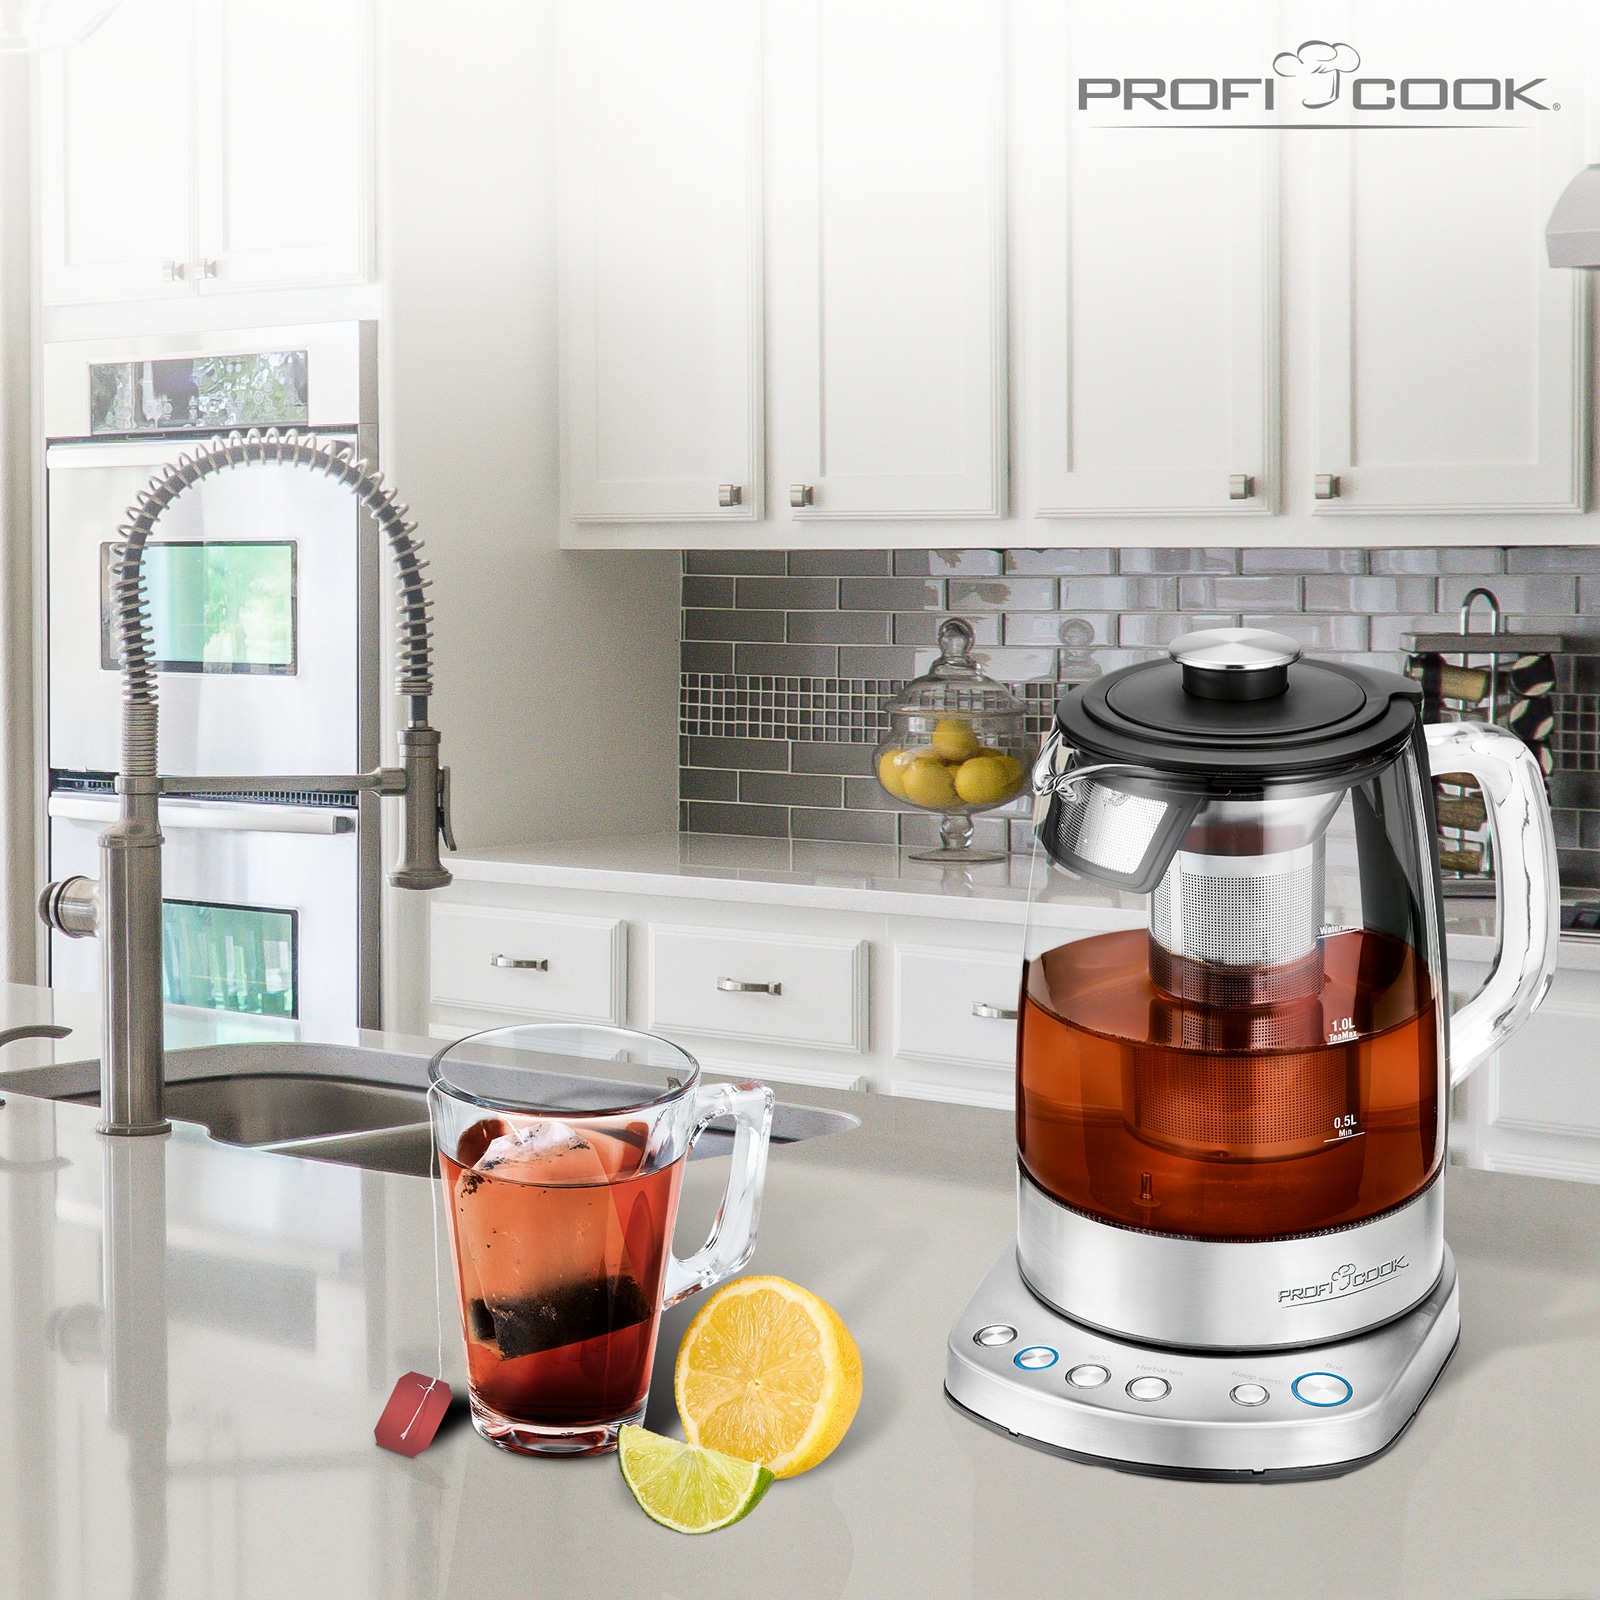 PROFI COOK Tee-/Wasserkocher PC-WKS 1167 G inox, 1,5 L, 2200 W, WiFi, Glas